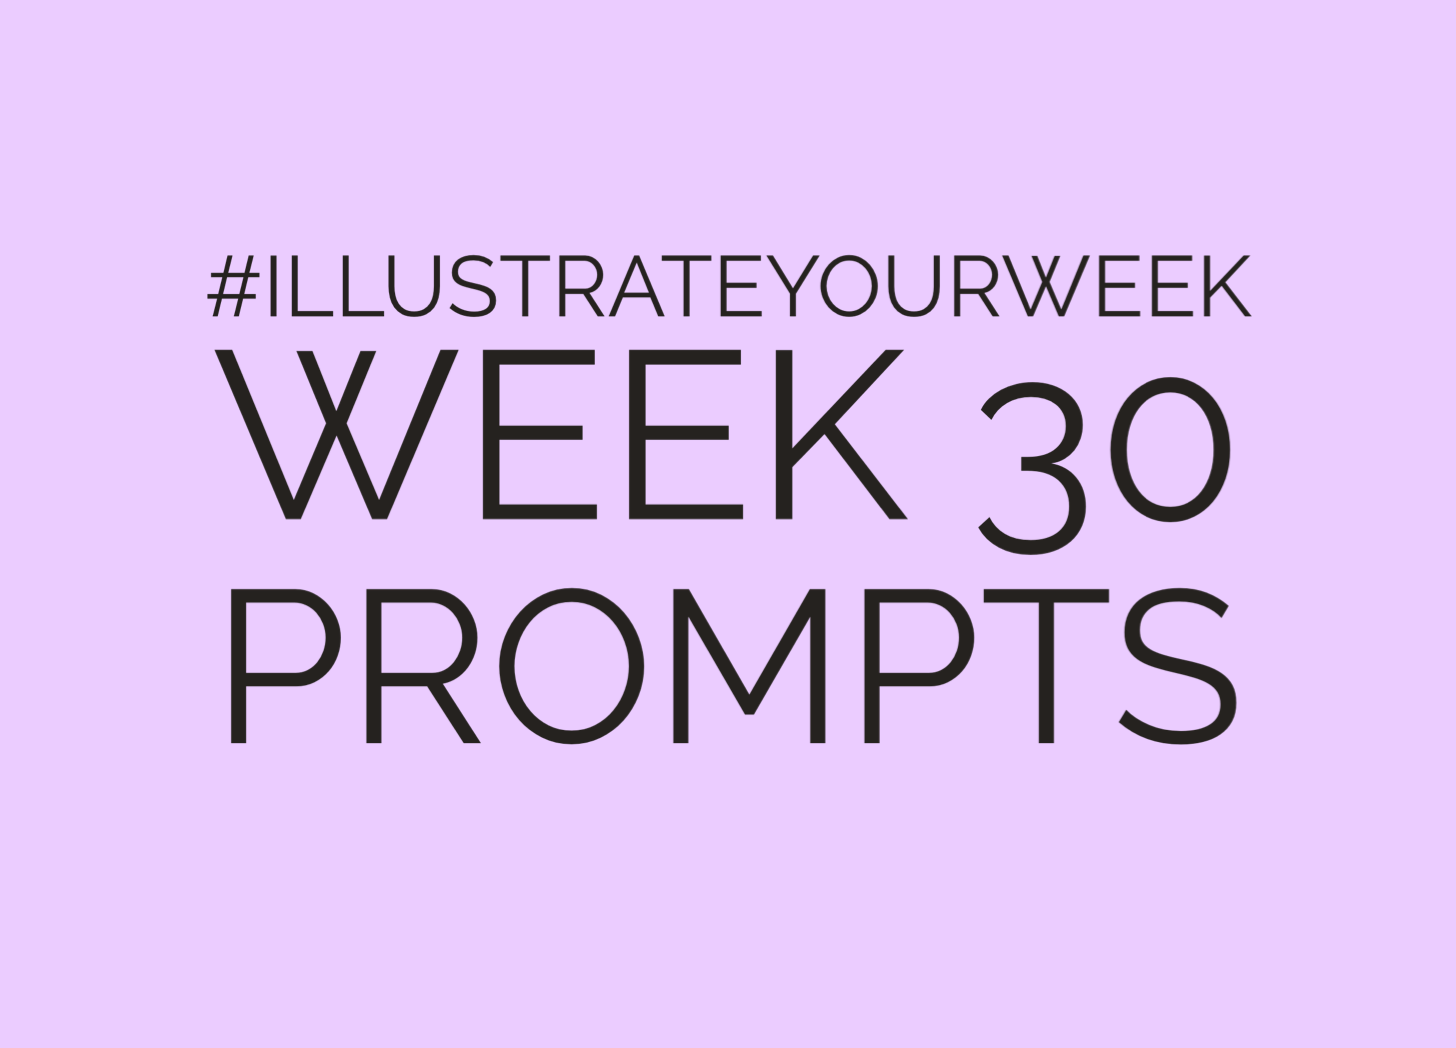 Week 30 Illustrate Your Week post